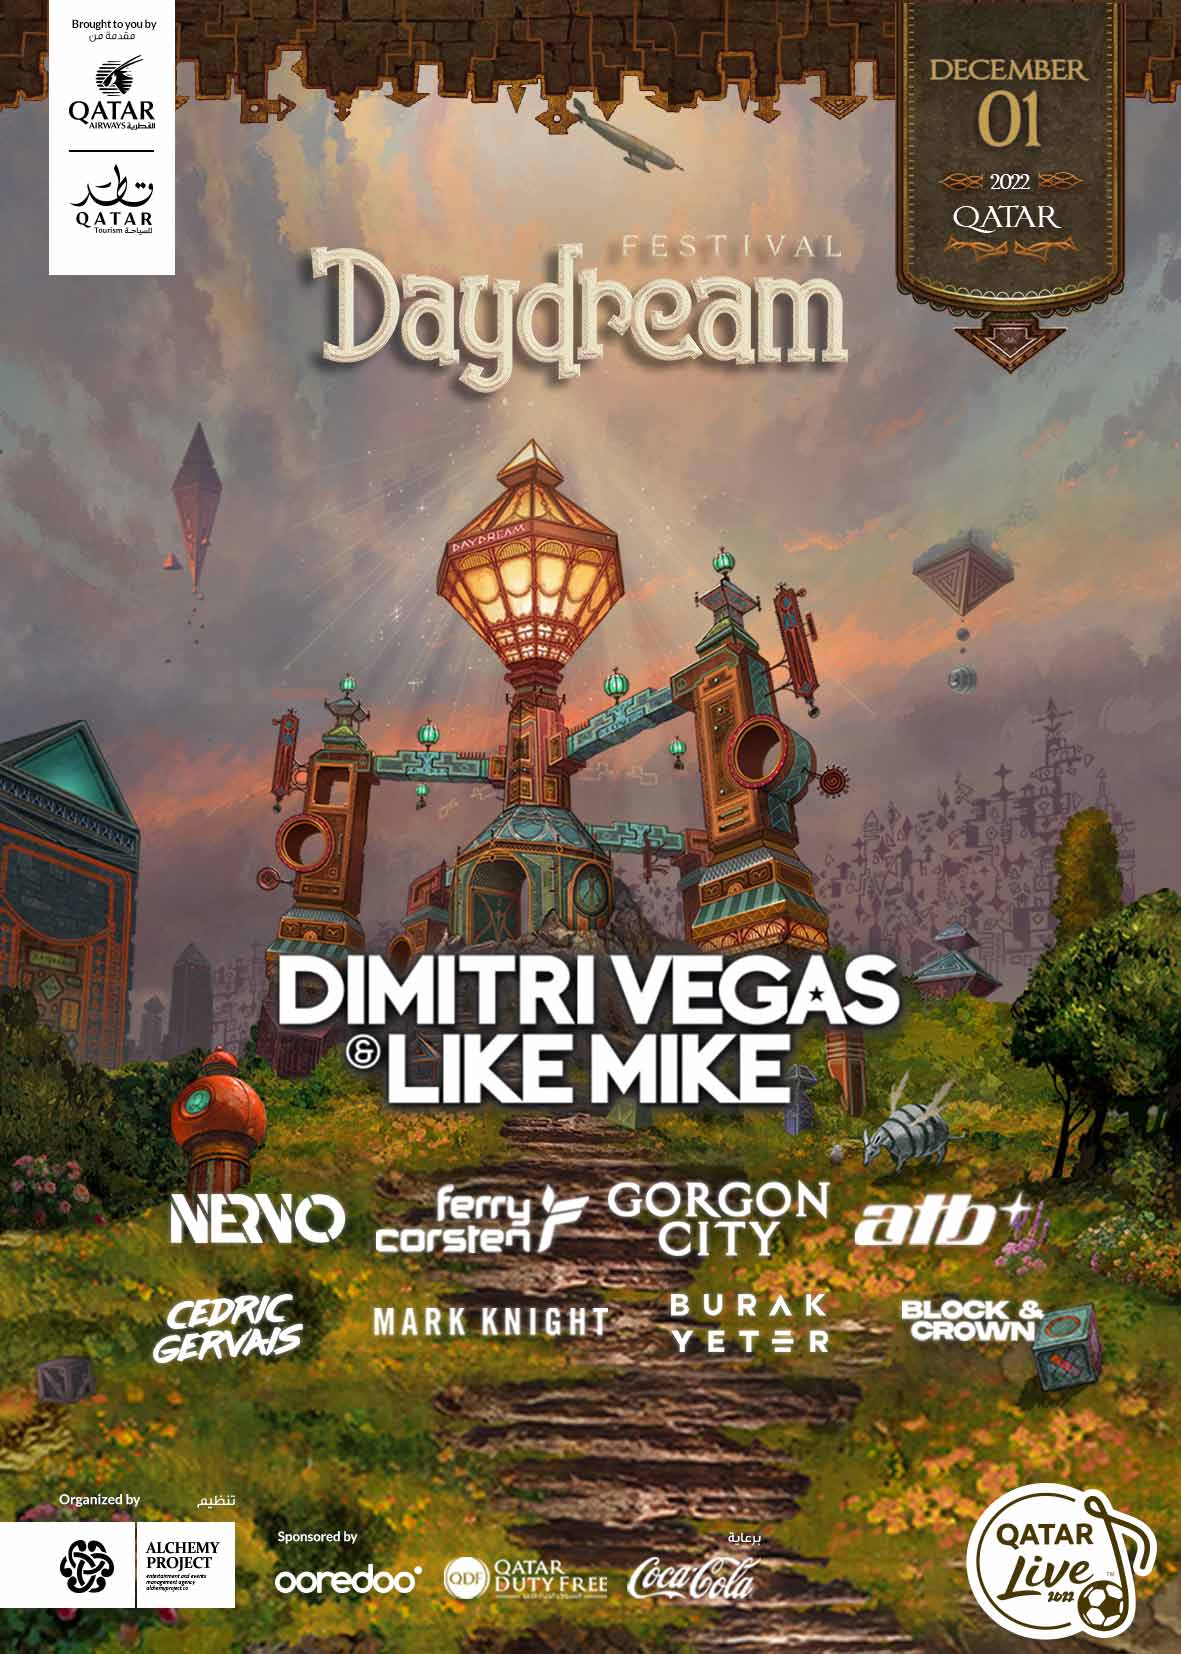 Daydream Music Festival 1st December